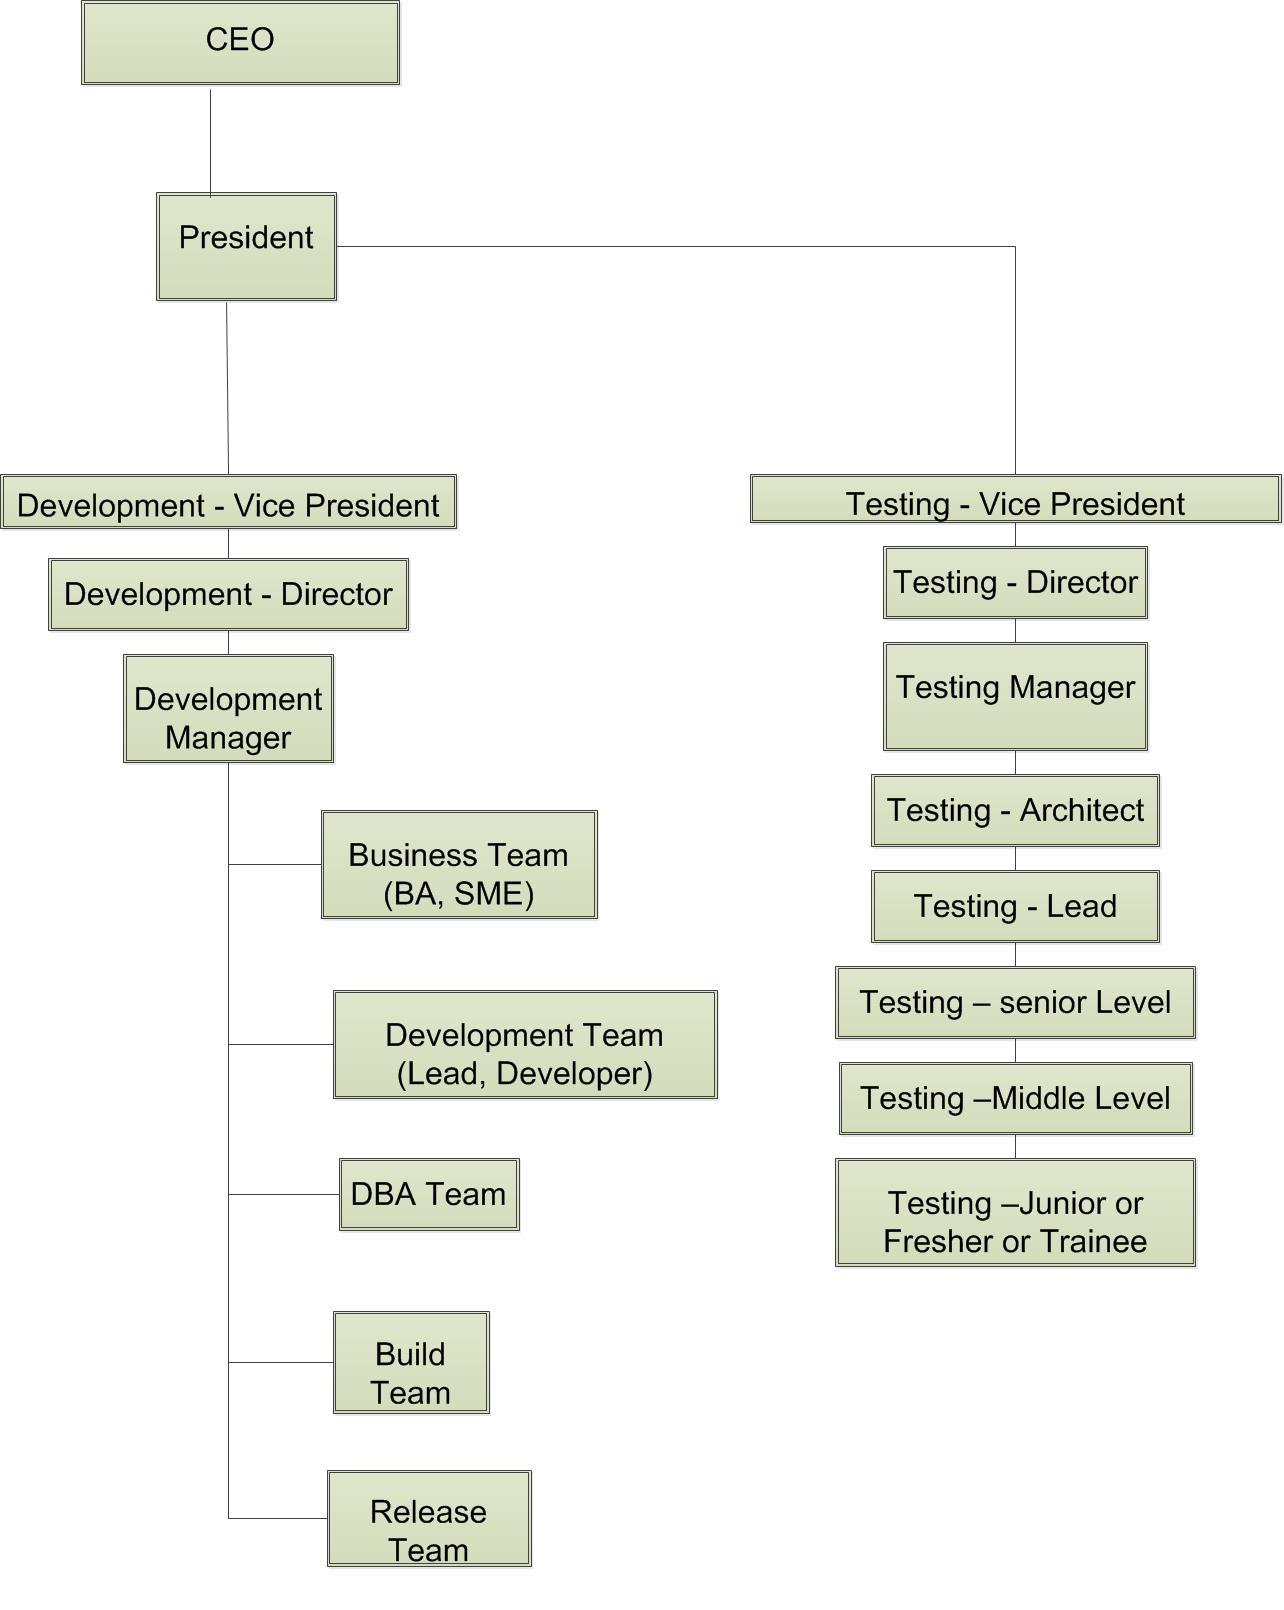 Designation hierarchy in software companies